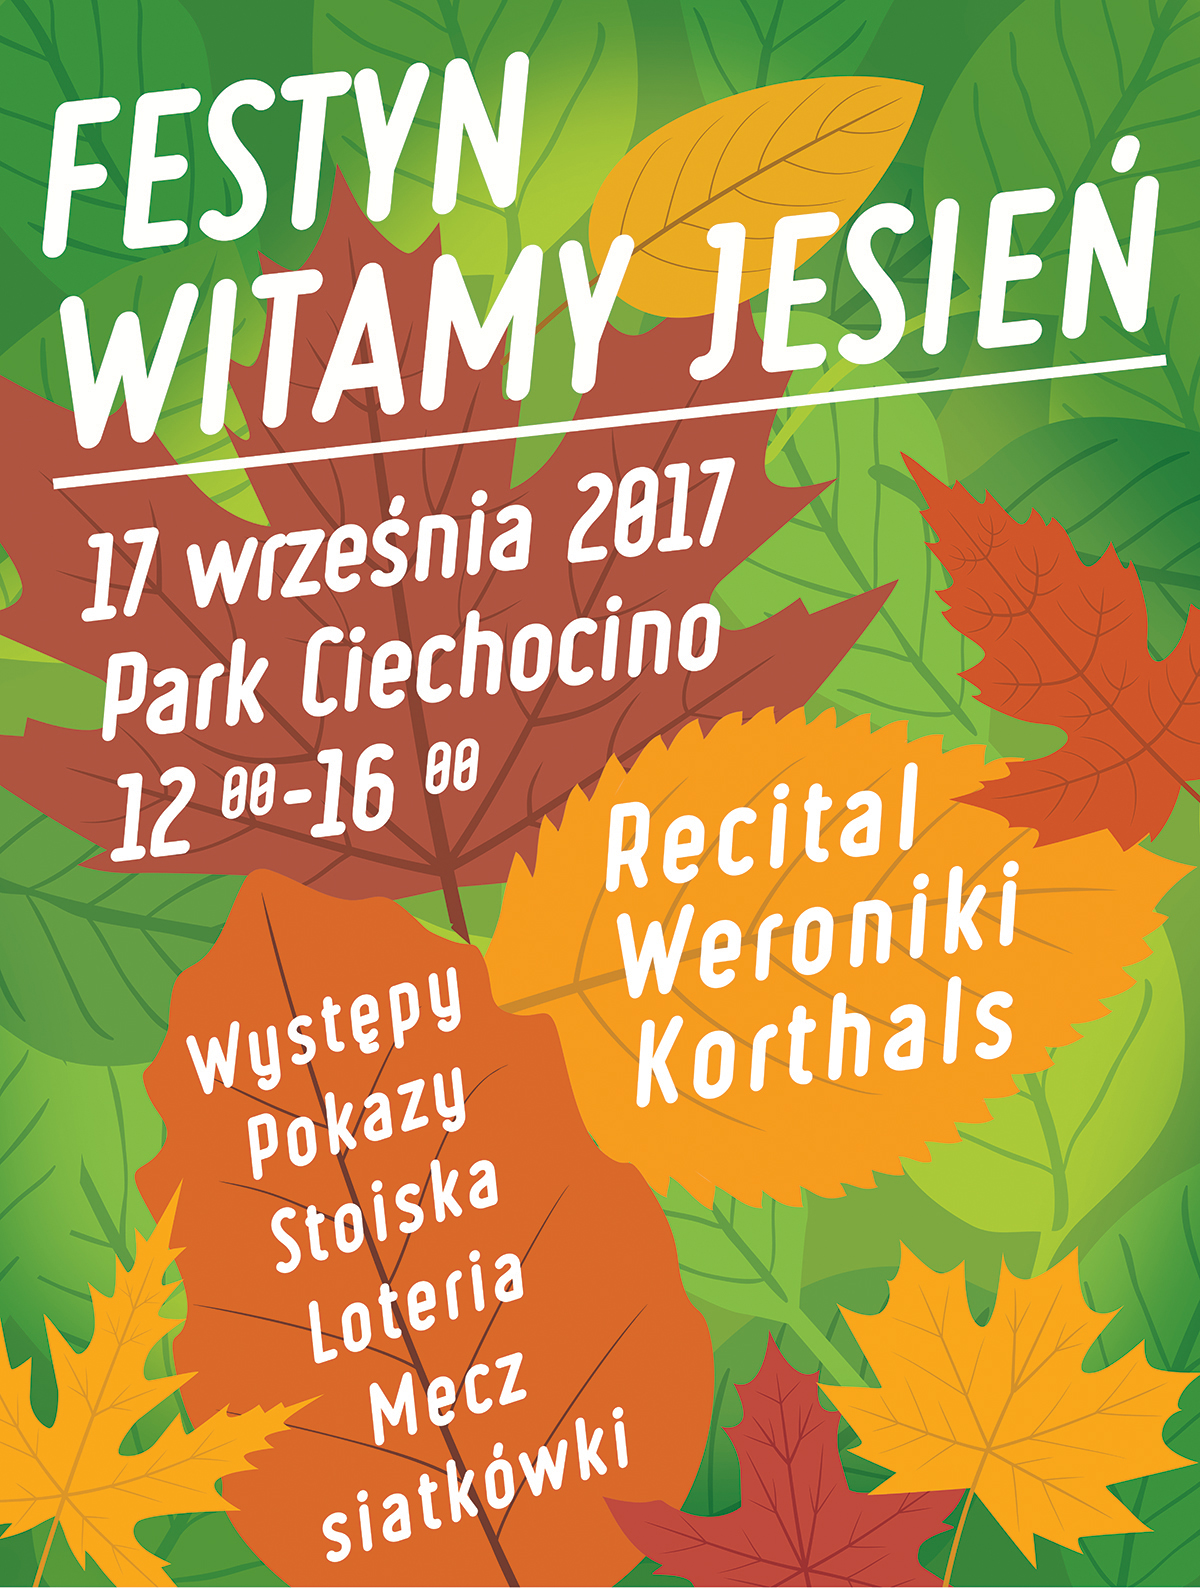 Festyn Witamy Jesień w Ciechocinie!